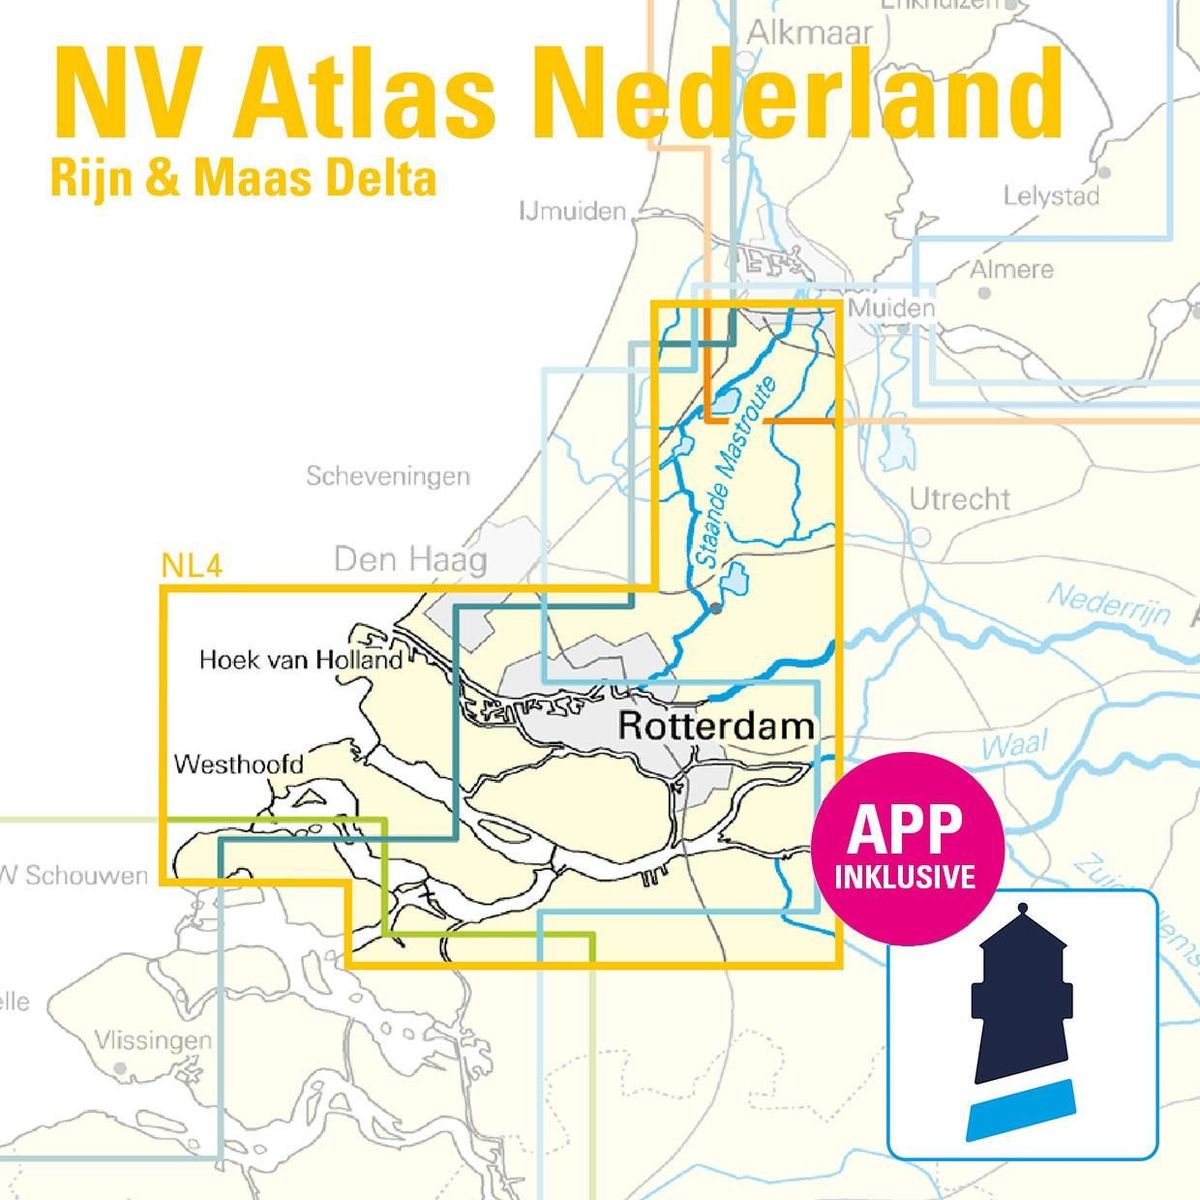 NV Atlas NL4 Rijn & Maas Delta